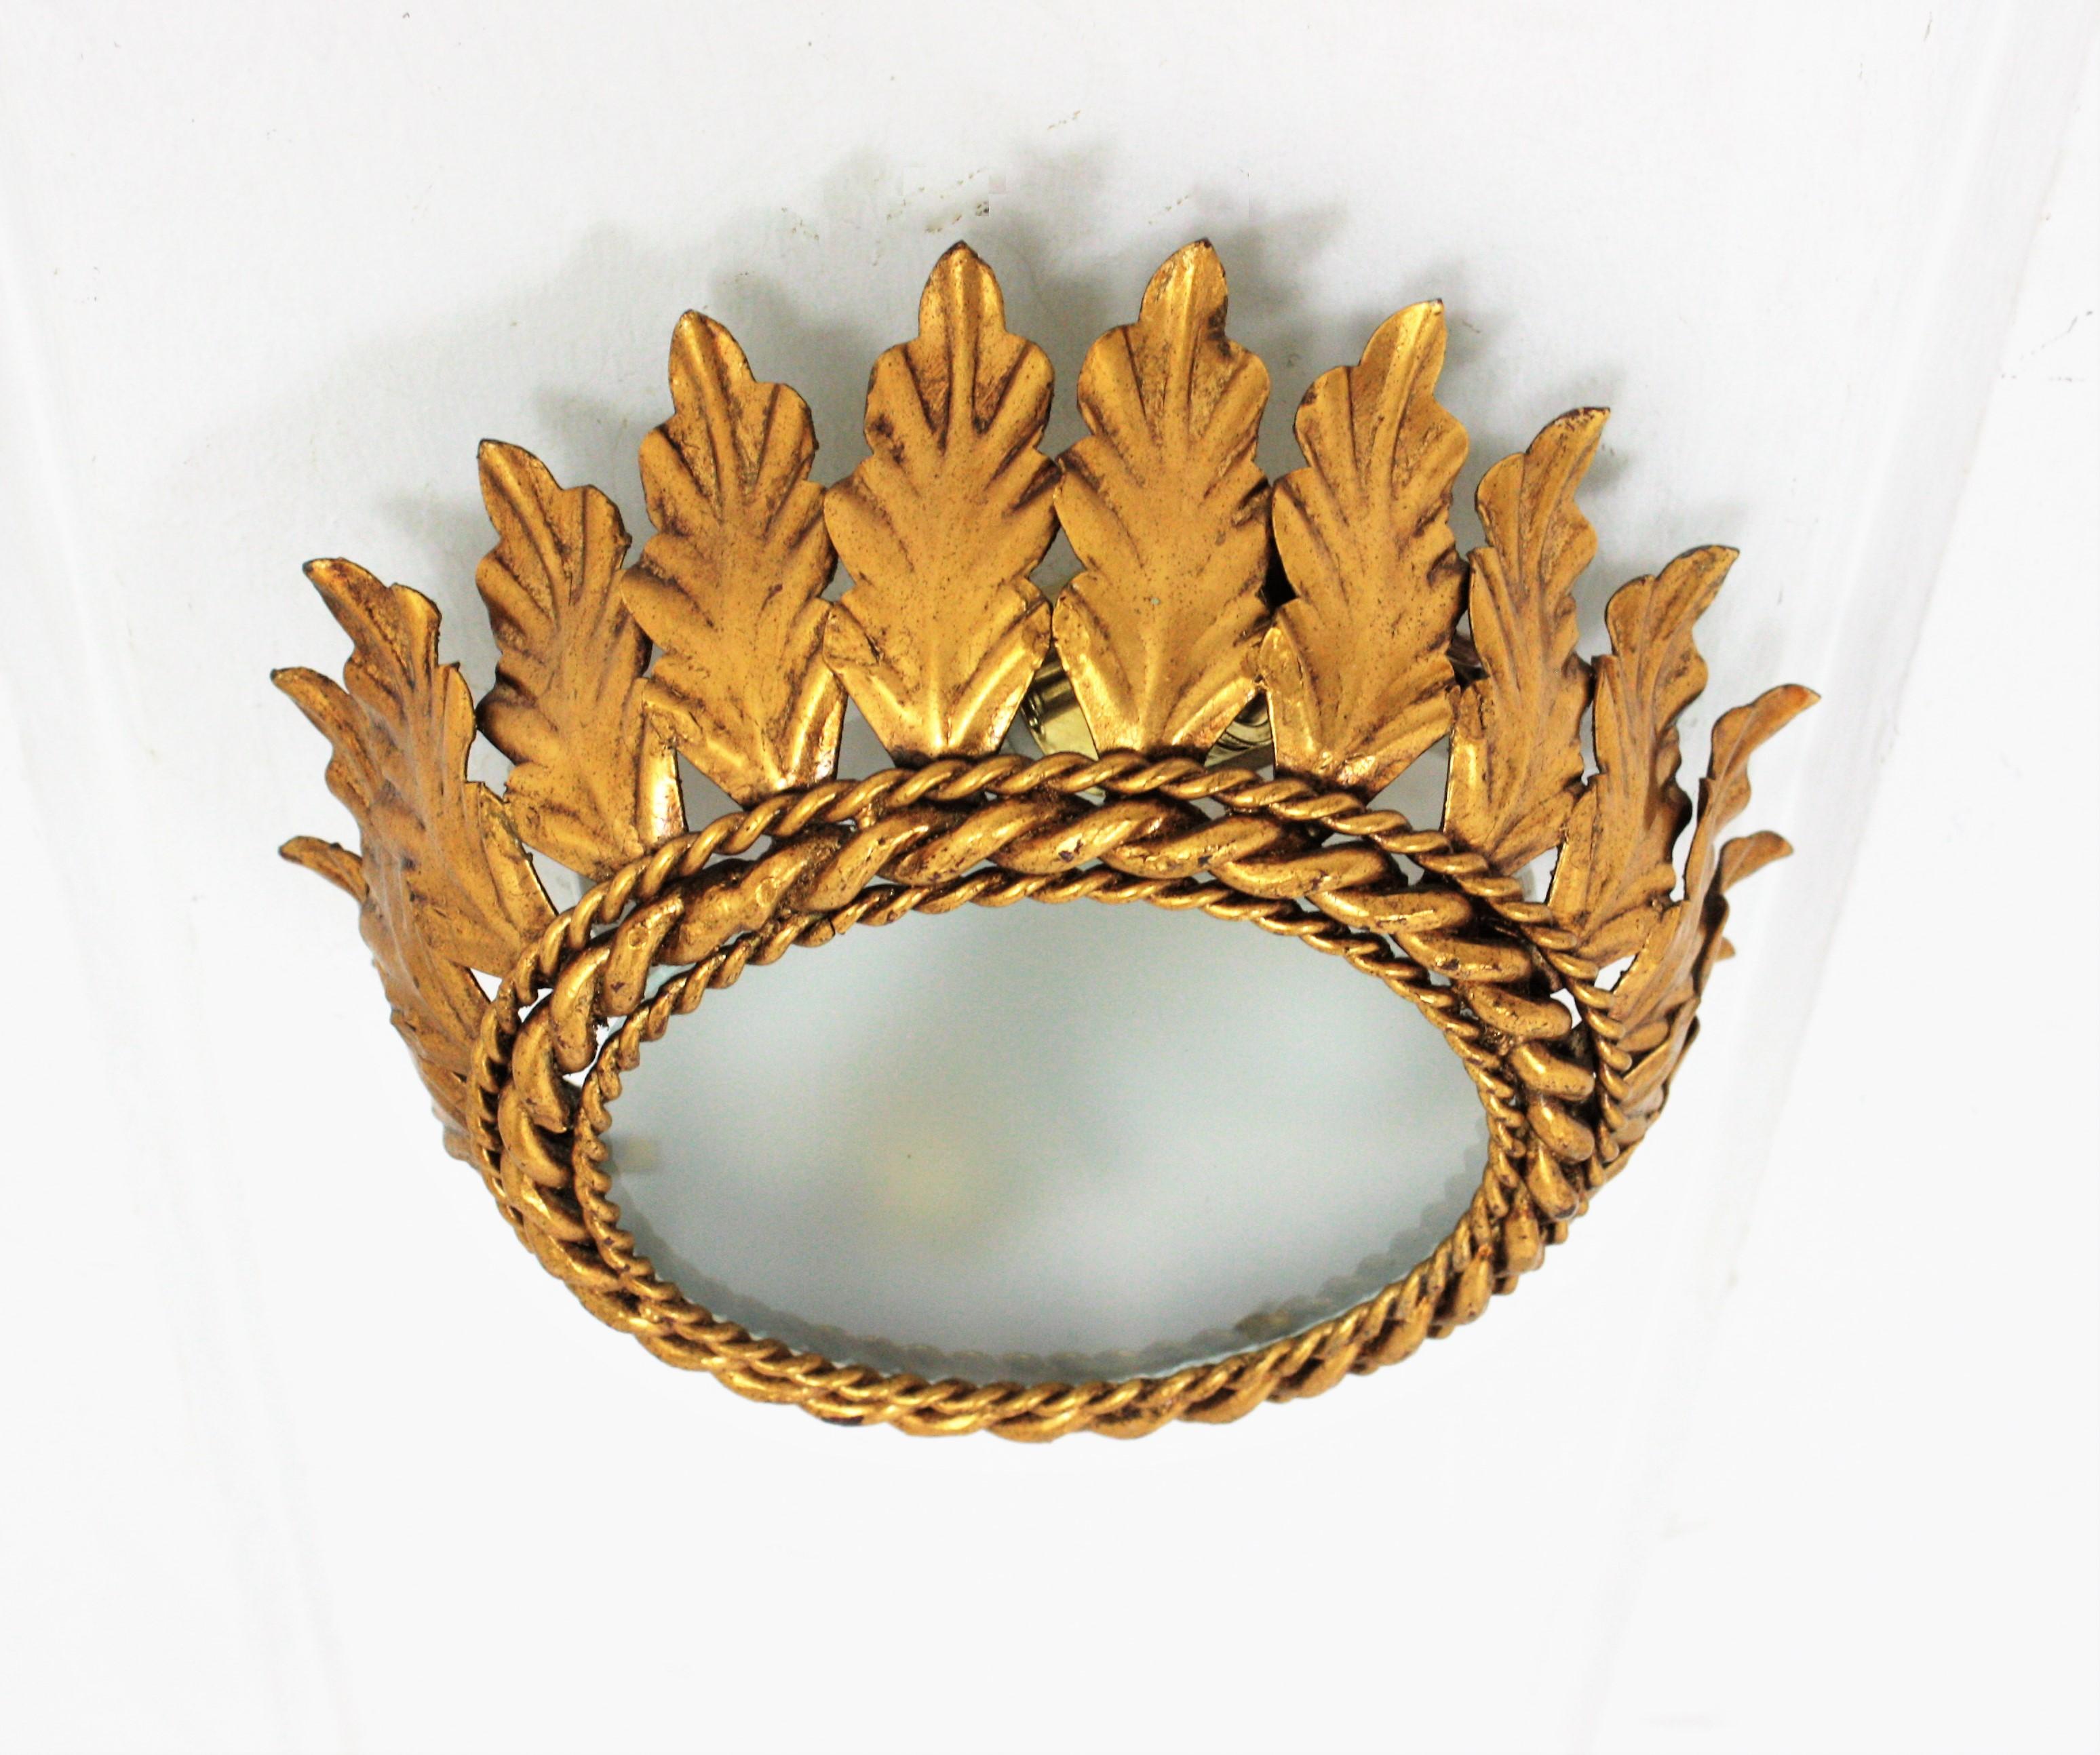 Neoklassizistische Revival vergoldeten Eisen blatt Krone bündig montiert mit Milchglas Schatten. Spanien, 1940er-1950er Jahre.
Handgefertigt in Spanien zur Zeit der Jahrhundertmitte aus handgehämmertem Metall mit Blattvergoldung. Es zeigt eine